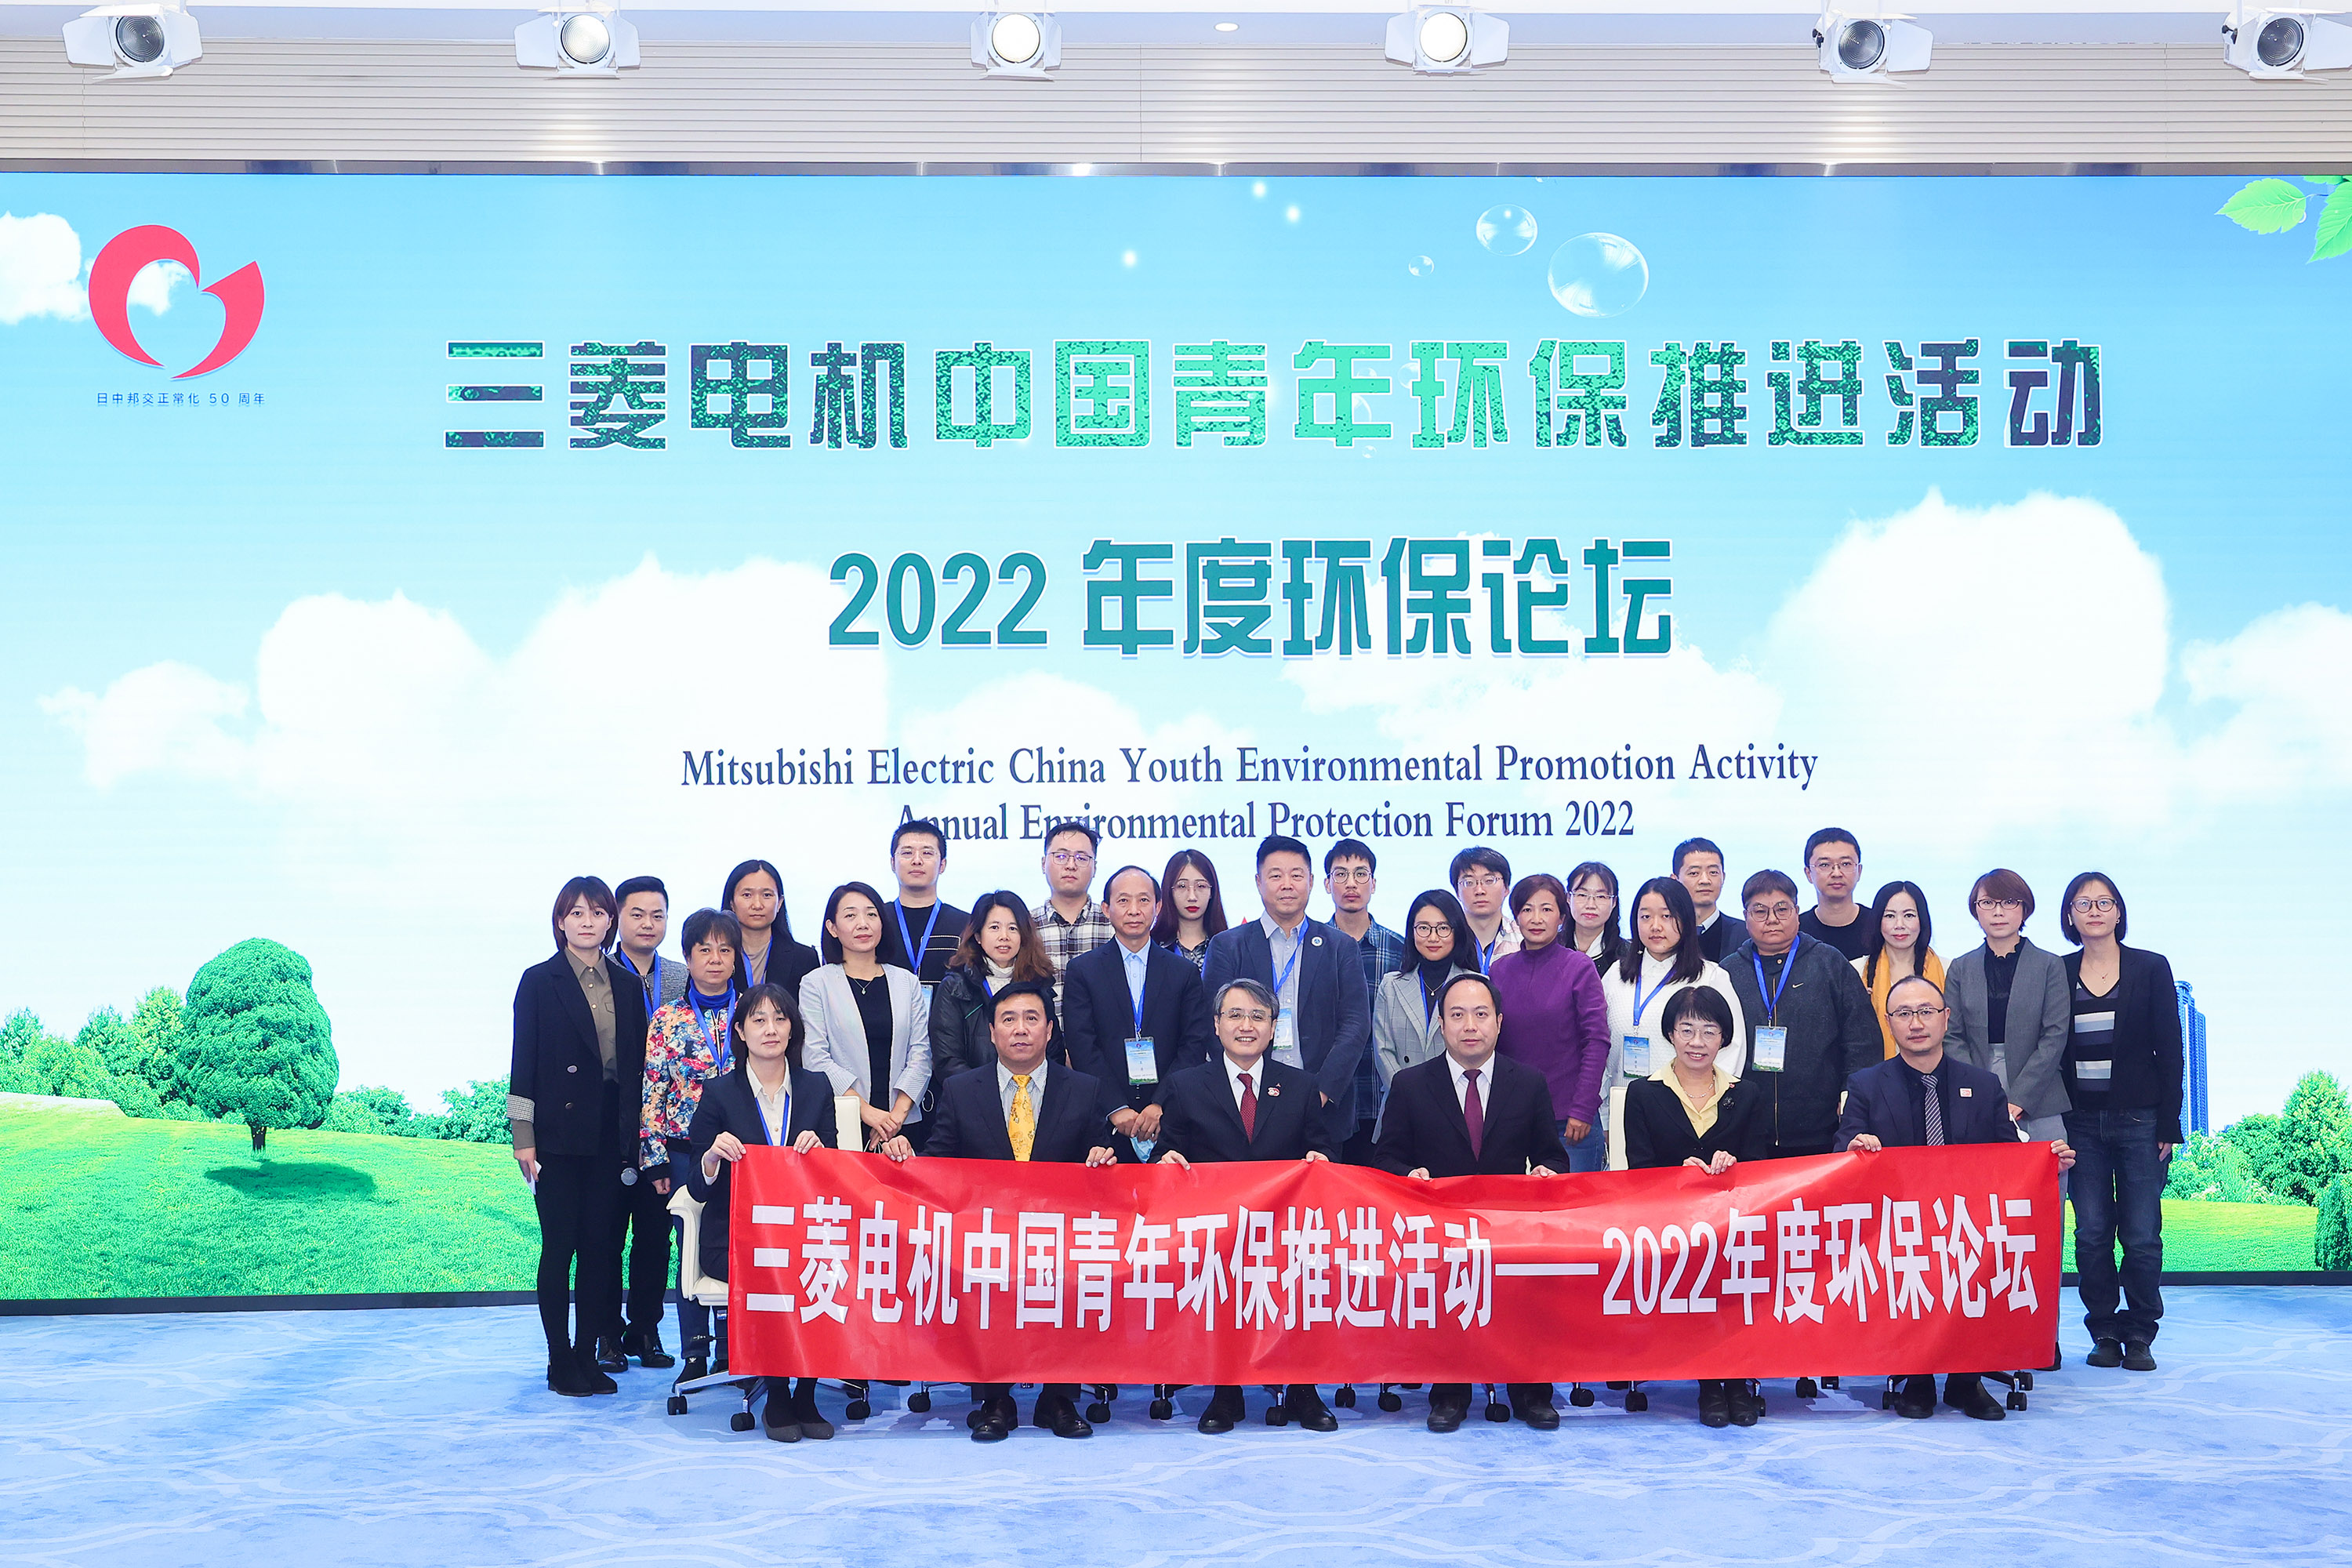 培育未来环保科技人才 三菱电机中国青年环保推进活动在京举办